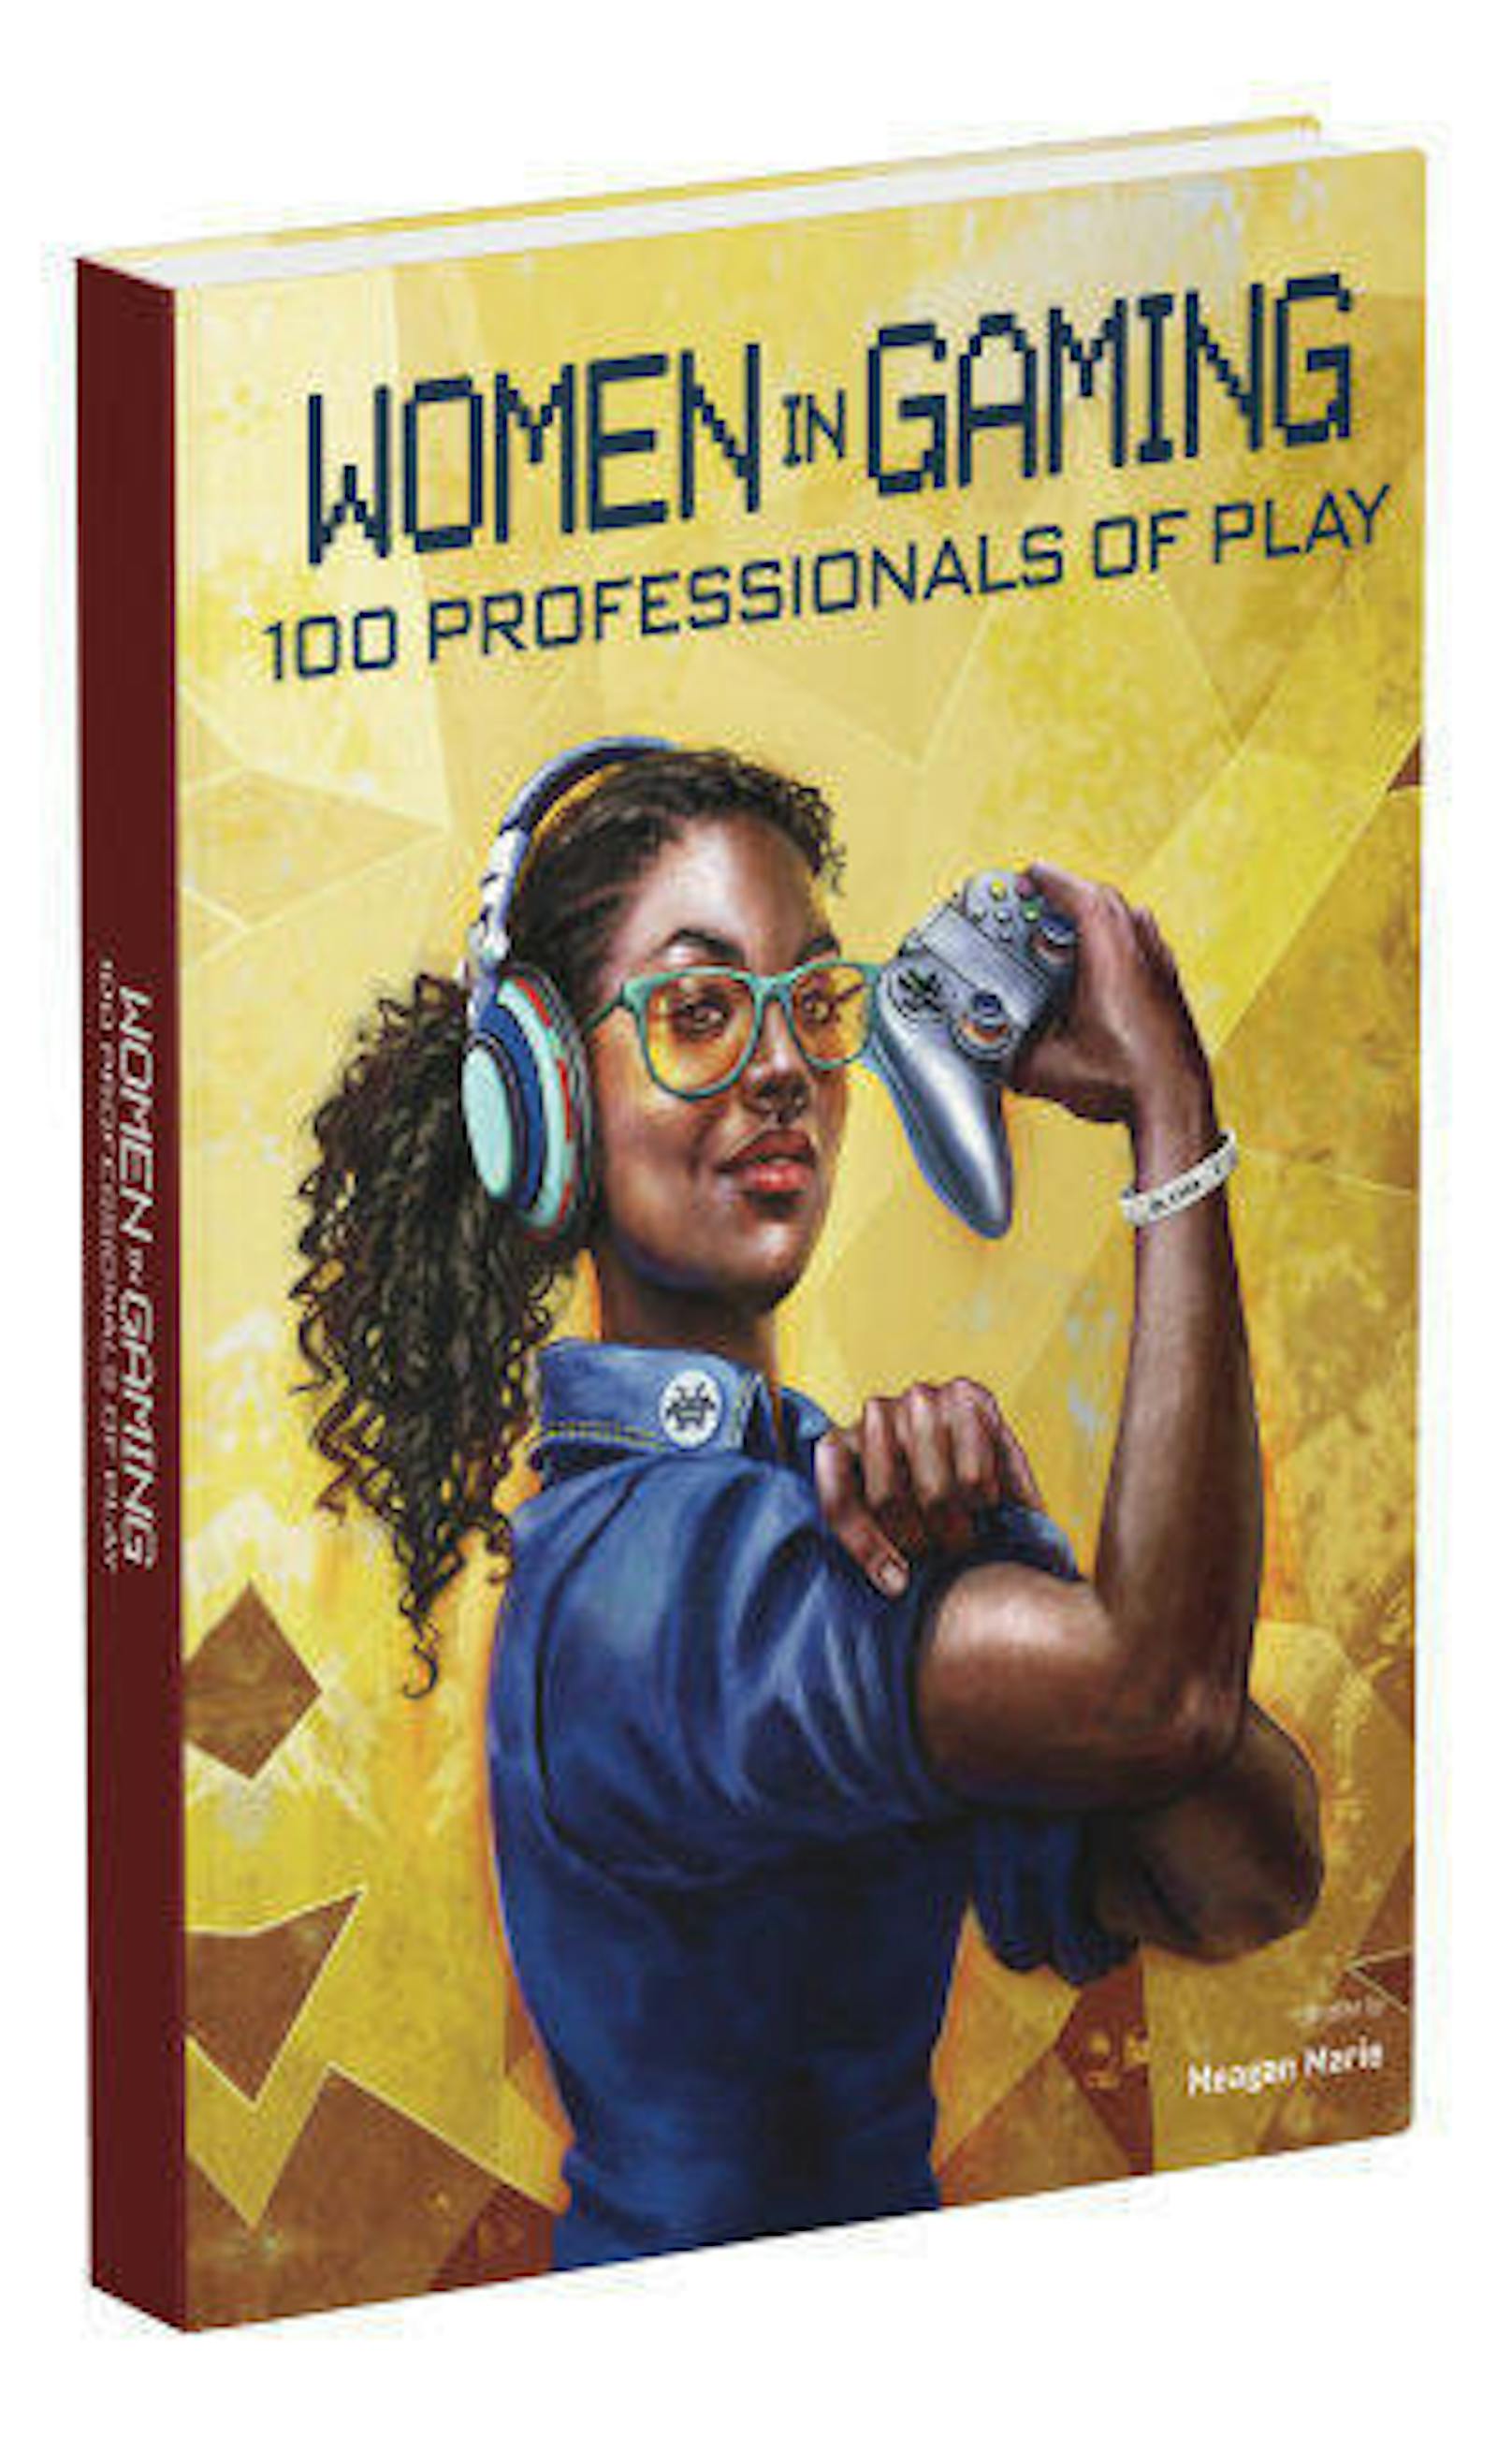 Für dieses Buch hat die Autorin und Cosplayerin Meagan Marie über 100 Frauen aus der Videospielindustrie interviewt. Diese sind etwa als Spieleentwicklerinnen, Künstlerinnen oder Sprecherinnen tätig und hatten großen Anteil daran, dass Videospiele zu einer weltweiten Erfolgsgeschichte wurden. Jene, die einen Einstieg in die Branche suchen, finden im Werk zudem verschiedene Tipps.
<b>Meagan Marie: "Women in Gaming: 100 Professionals of Play", Random House N.Y., 352 Seiten, Englisch, 18,99 Euro</b>